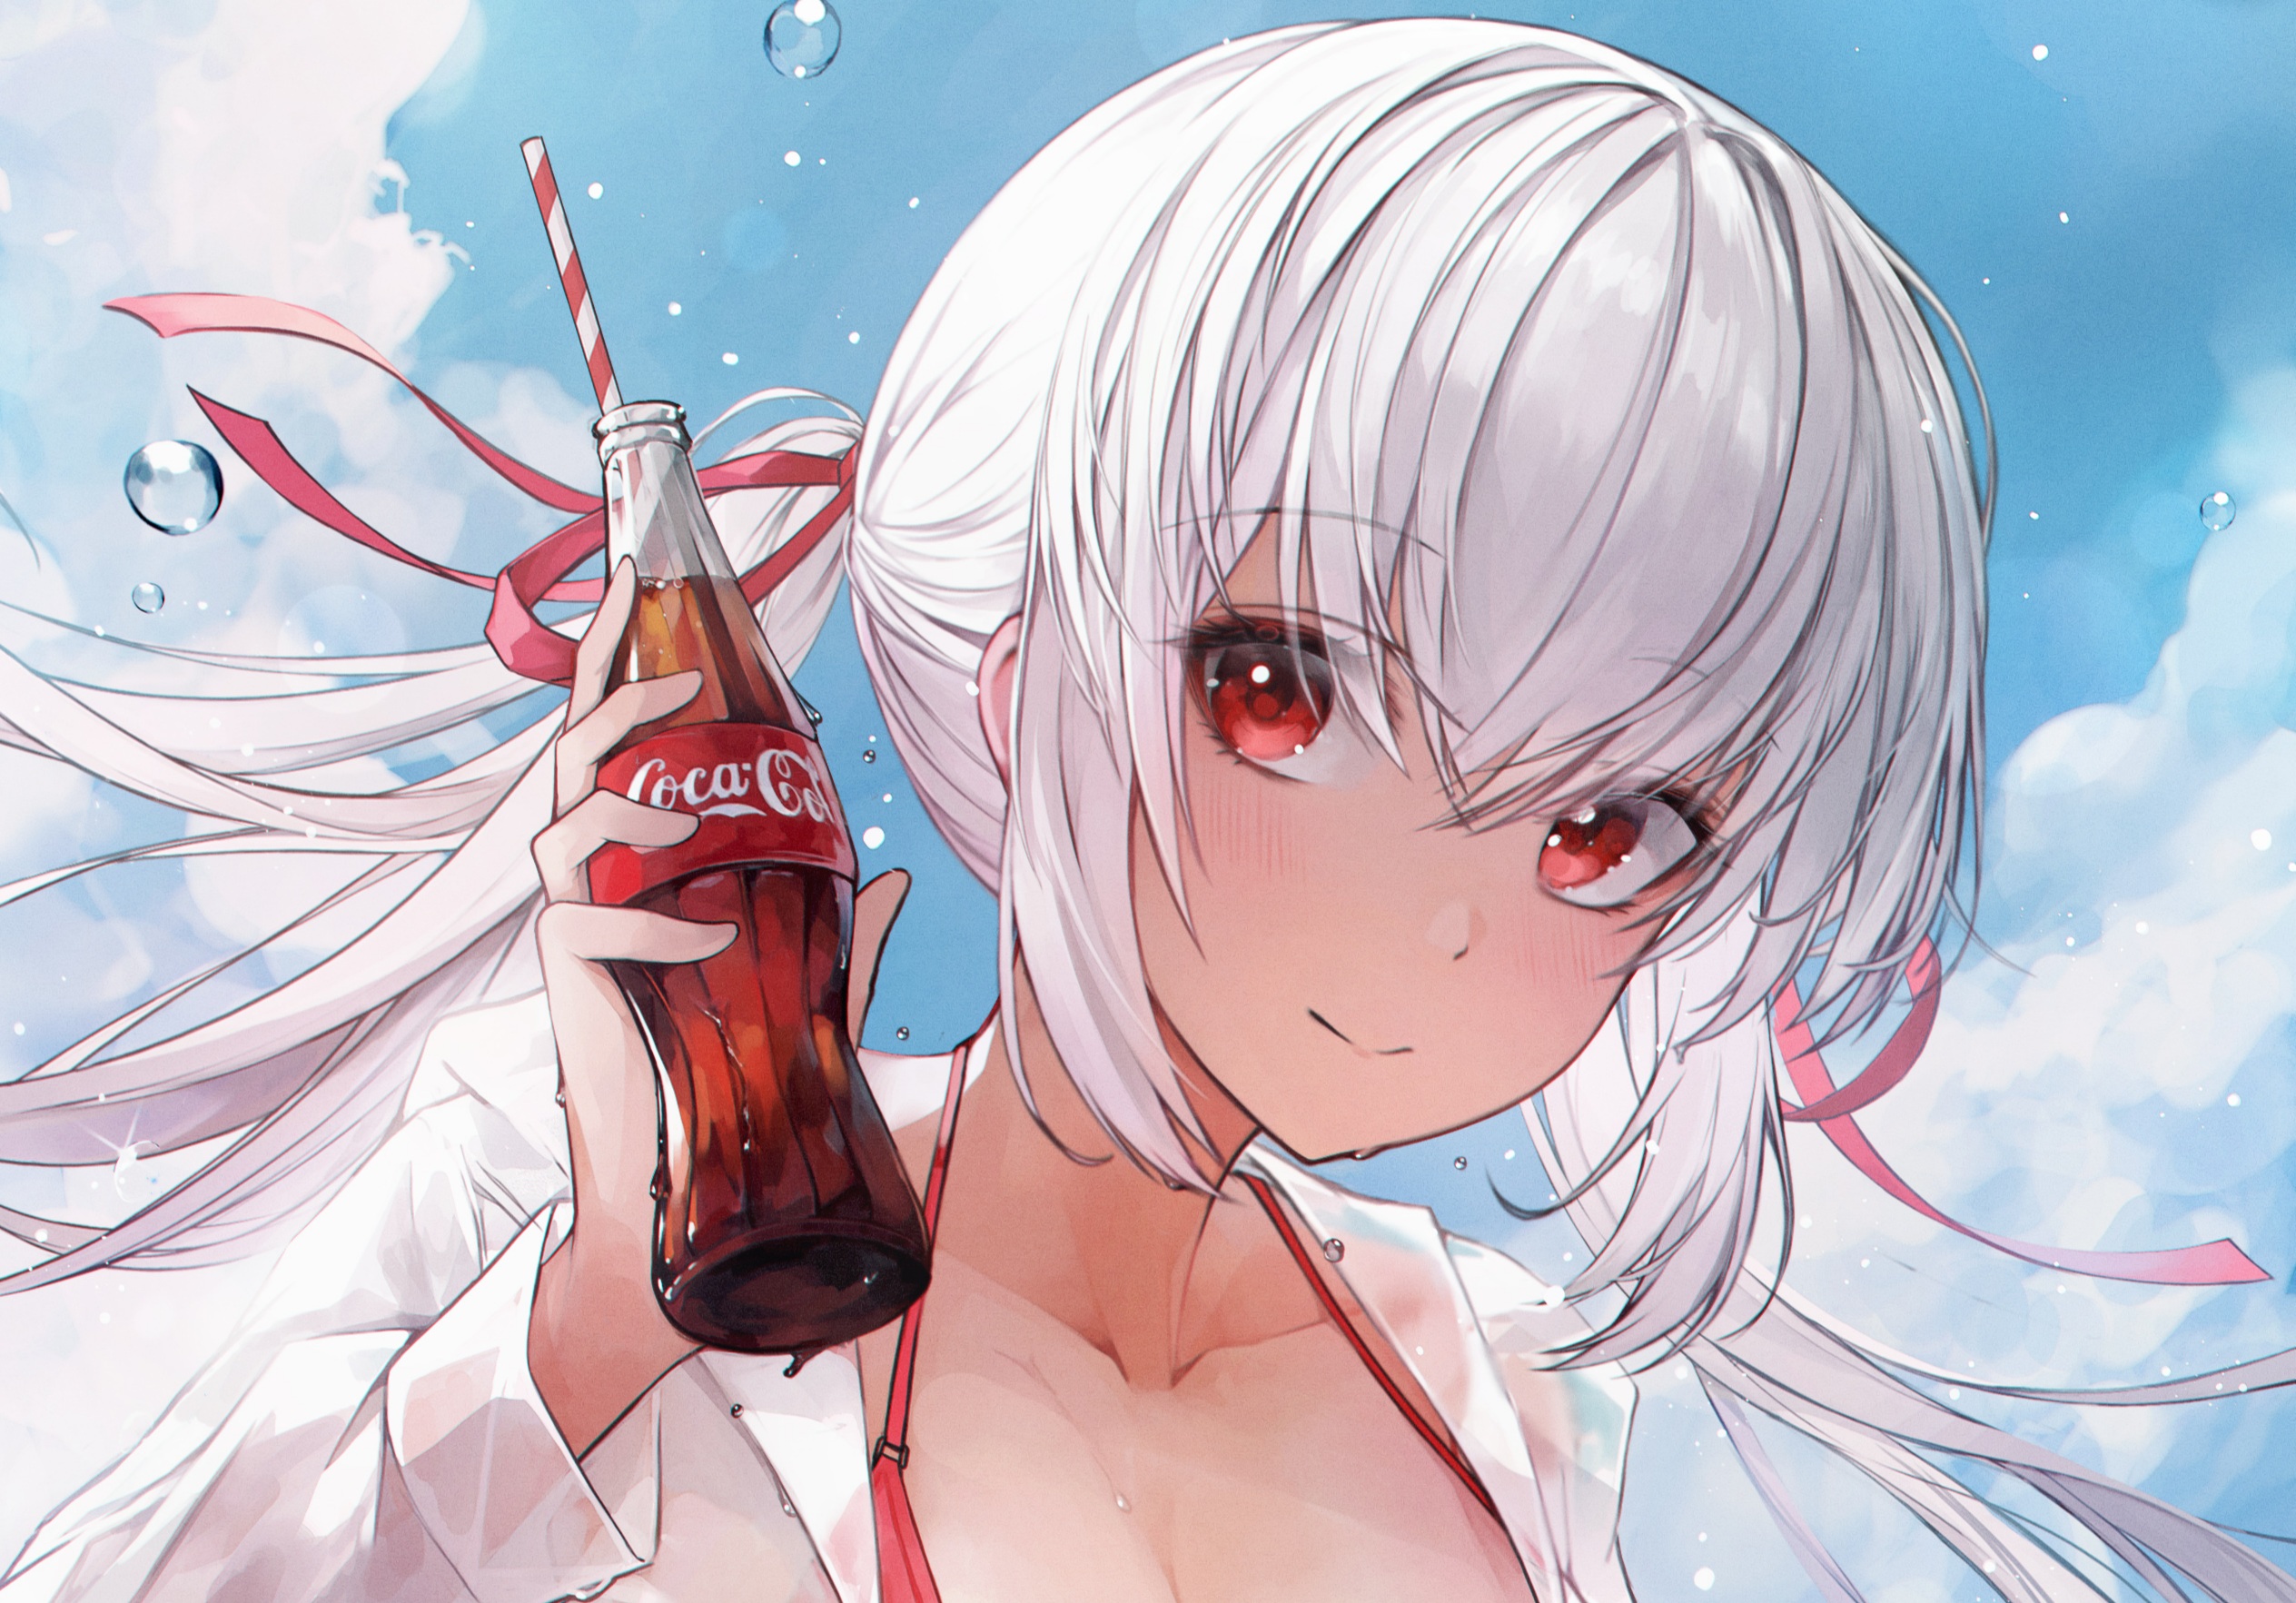 Descarga gratuita de fondo de pantalla para móvil de Coca Cola, Original, Animado, Ojos Rojos, Pelo Blanco.